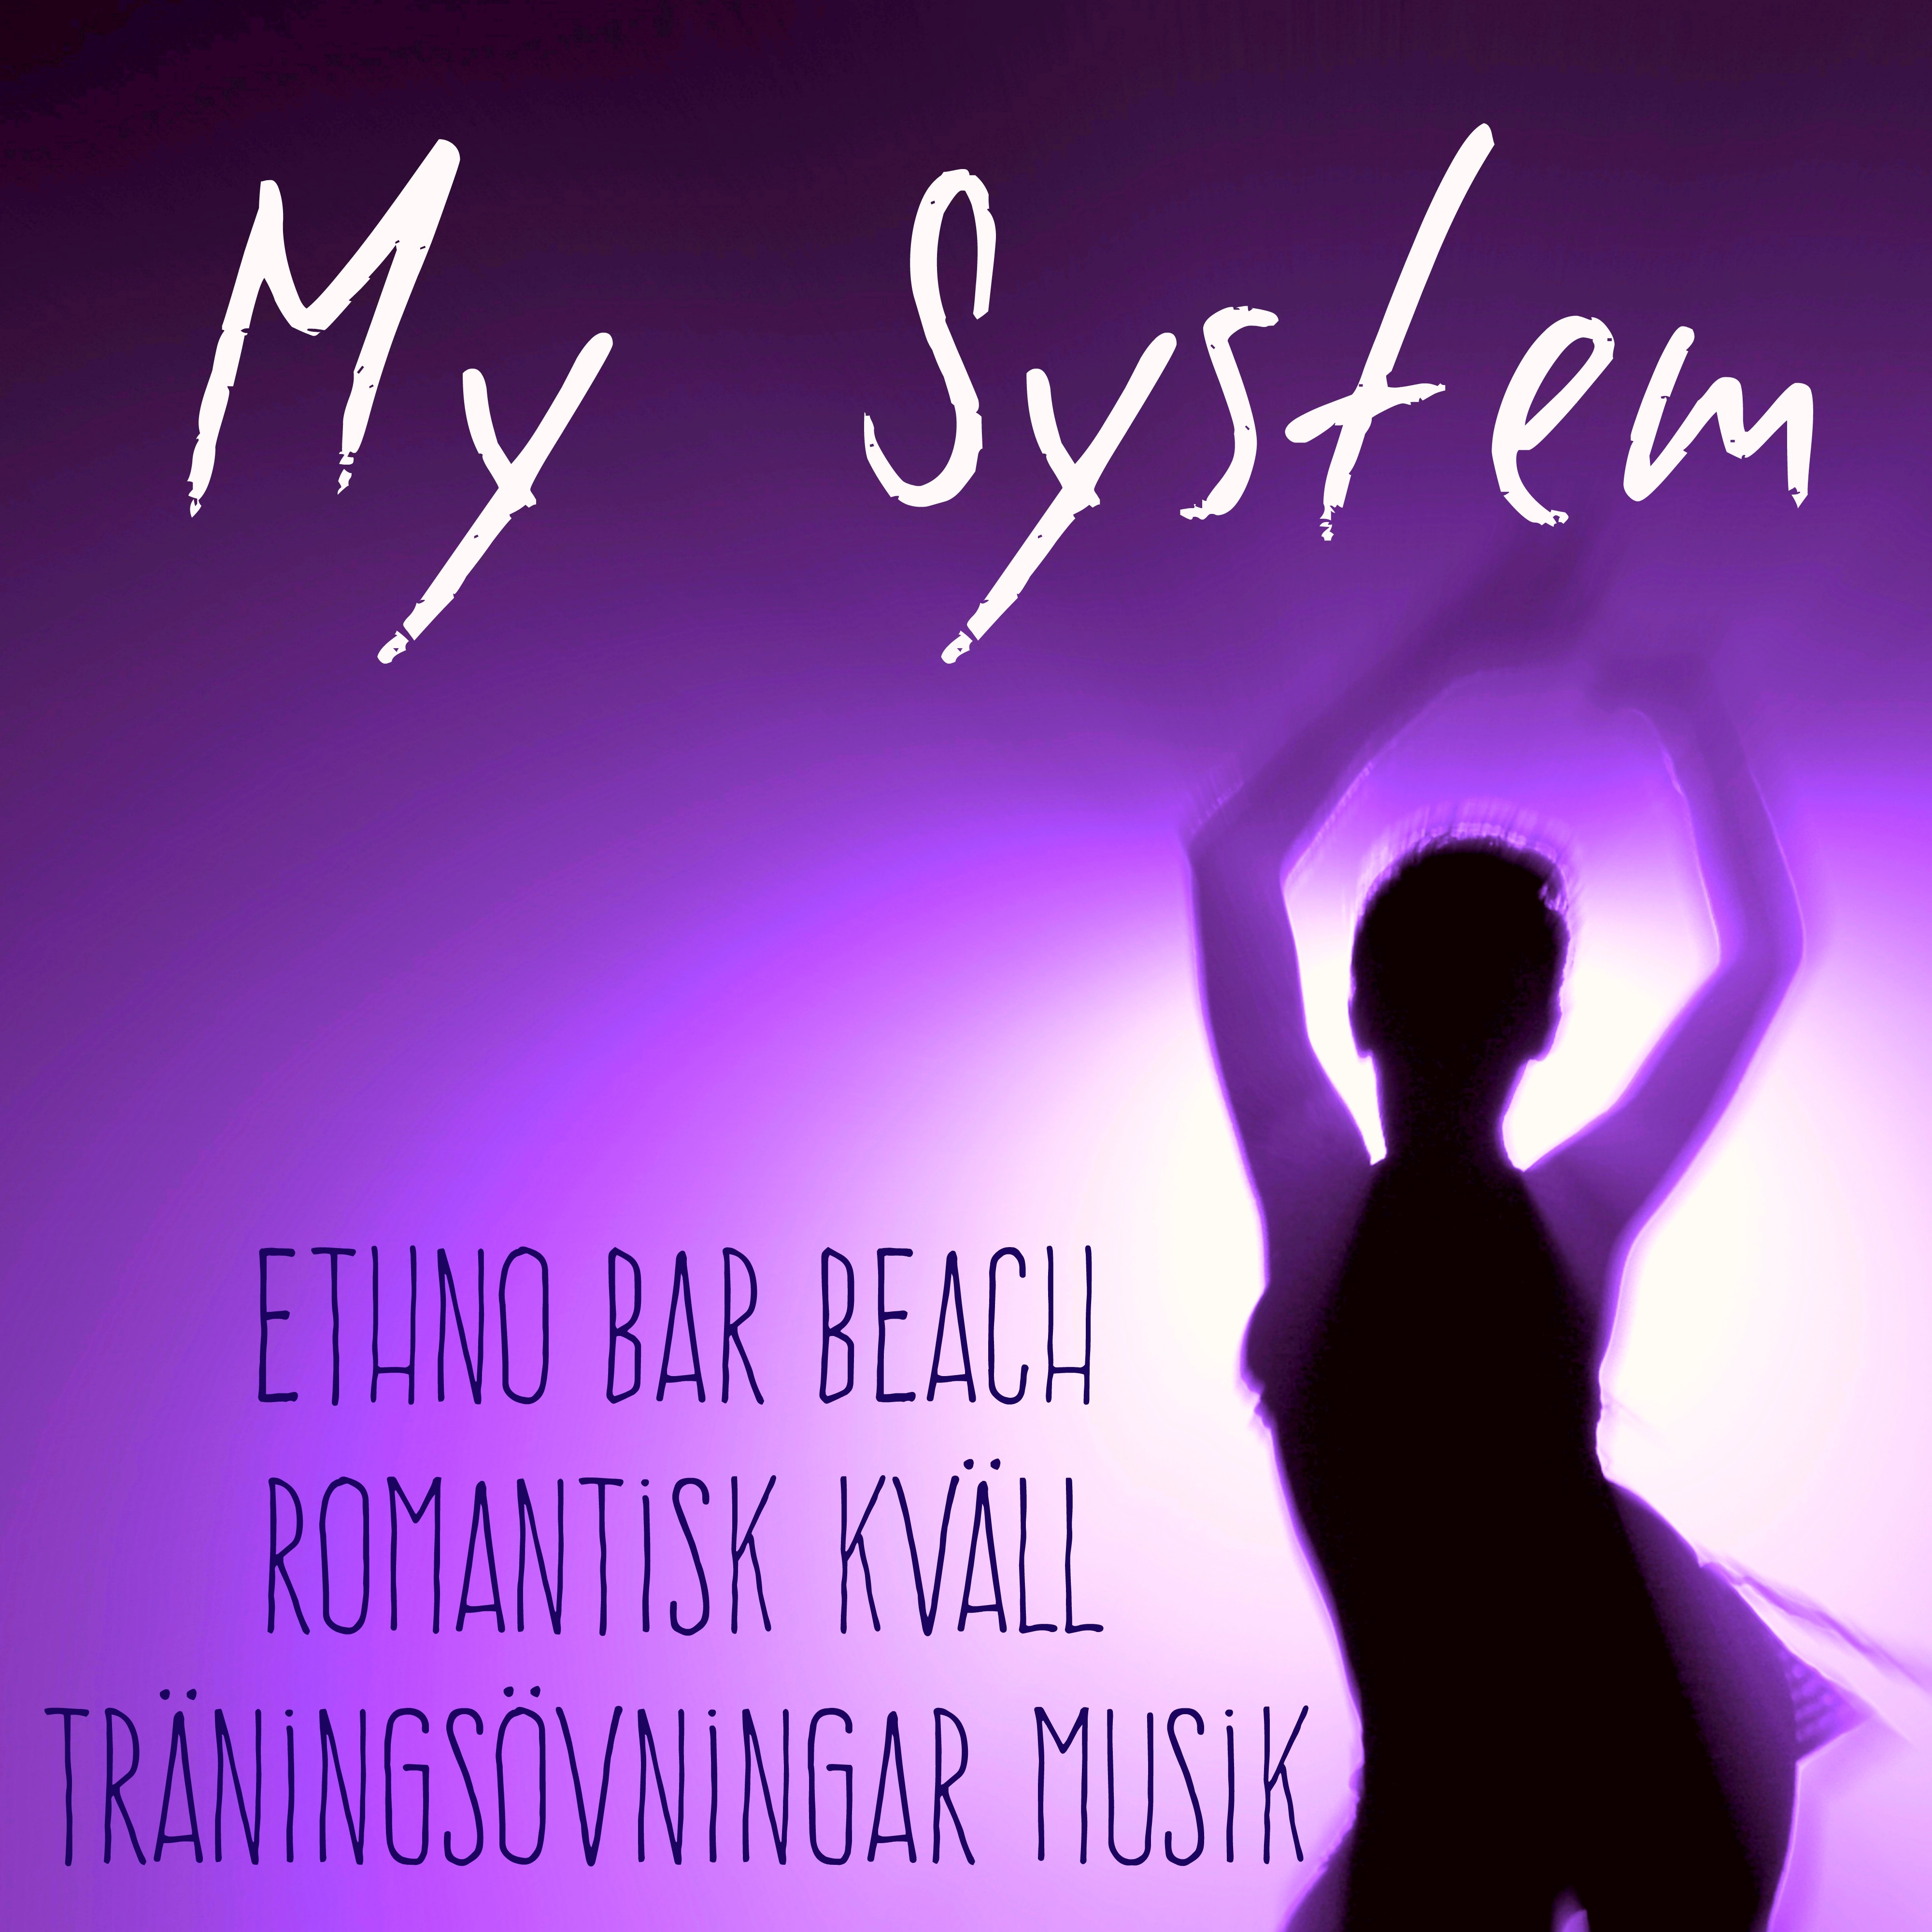 My System  Ethno Bar Beach Romantisk Kv ll Tr nings vningar Musik med Lounge Chill House Ljud